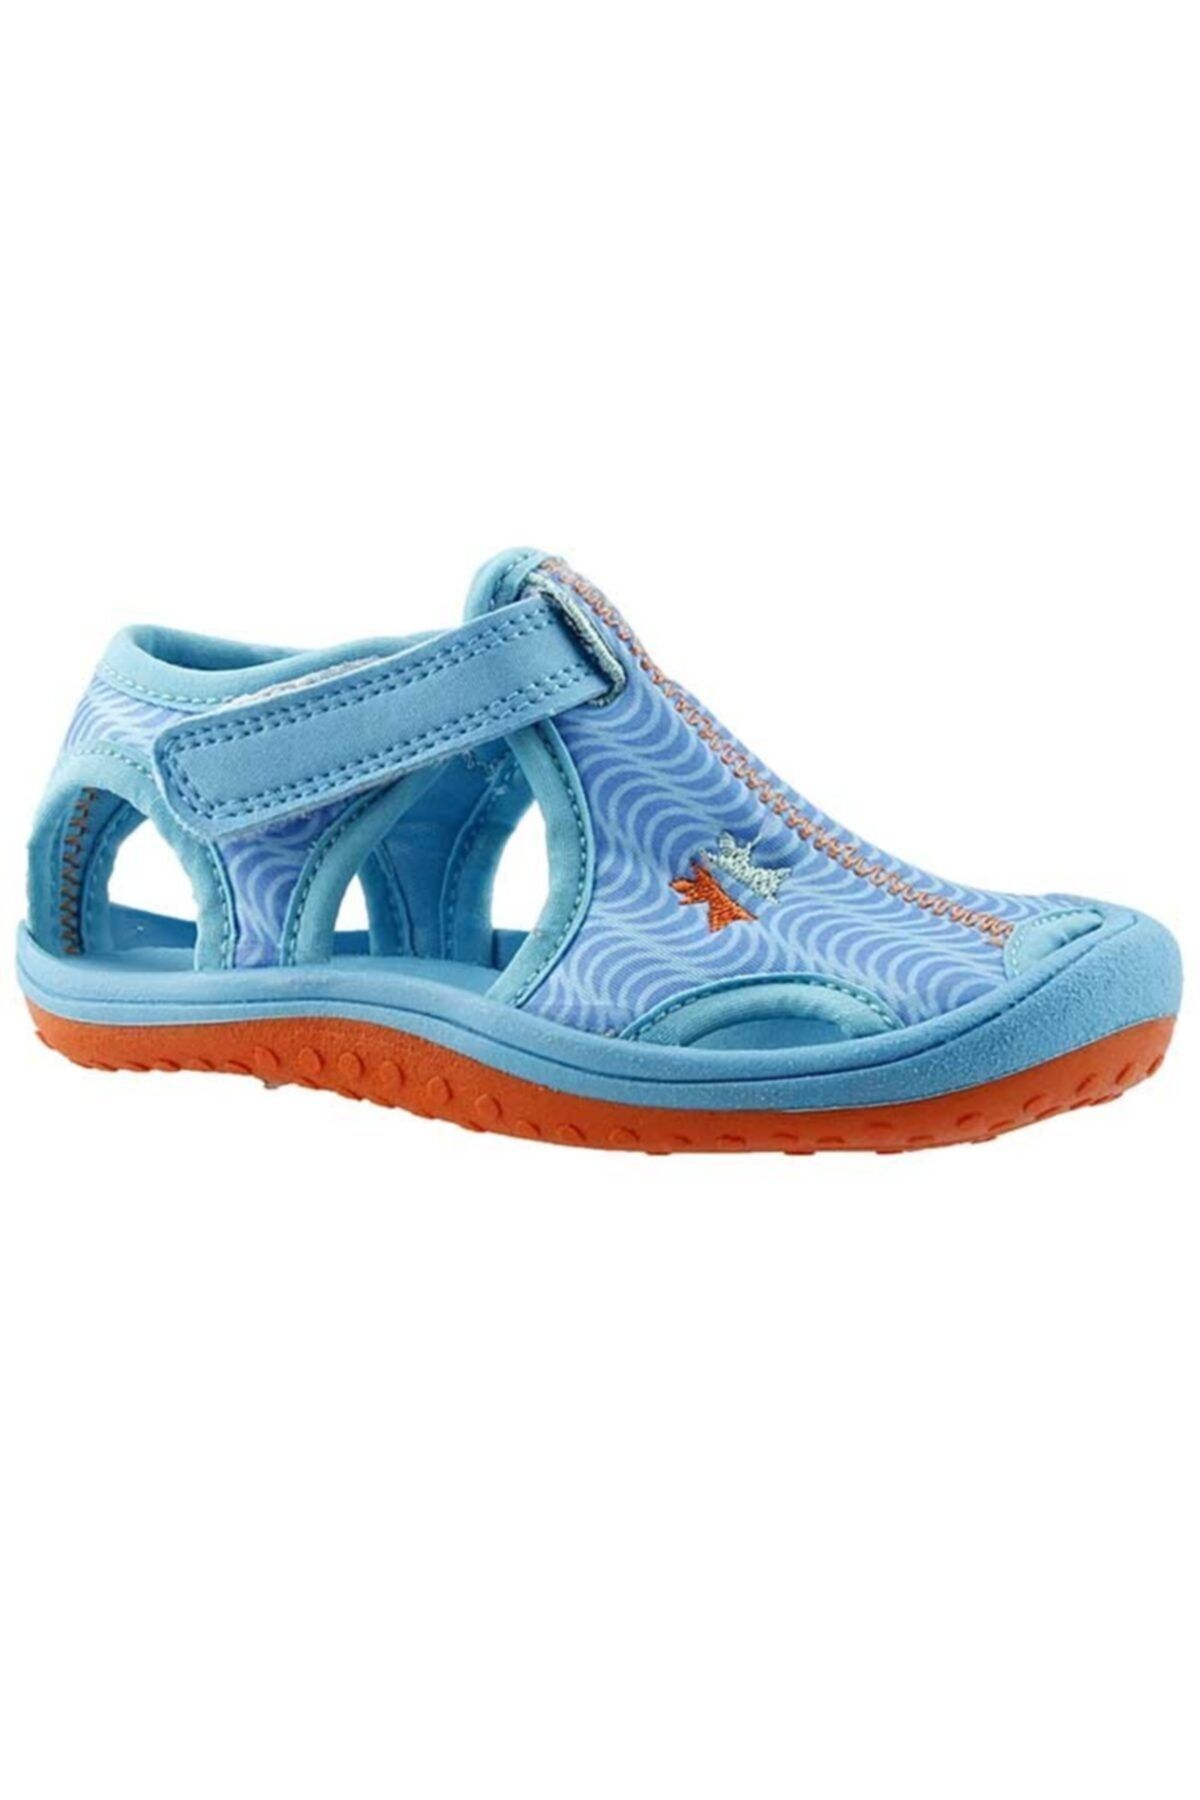 Ayakland Kids Mavi Aqua Erkek Çocuk Sandalet Panduf Ayakkabı